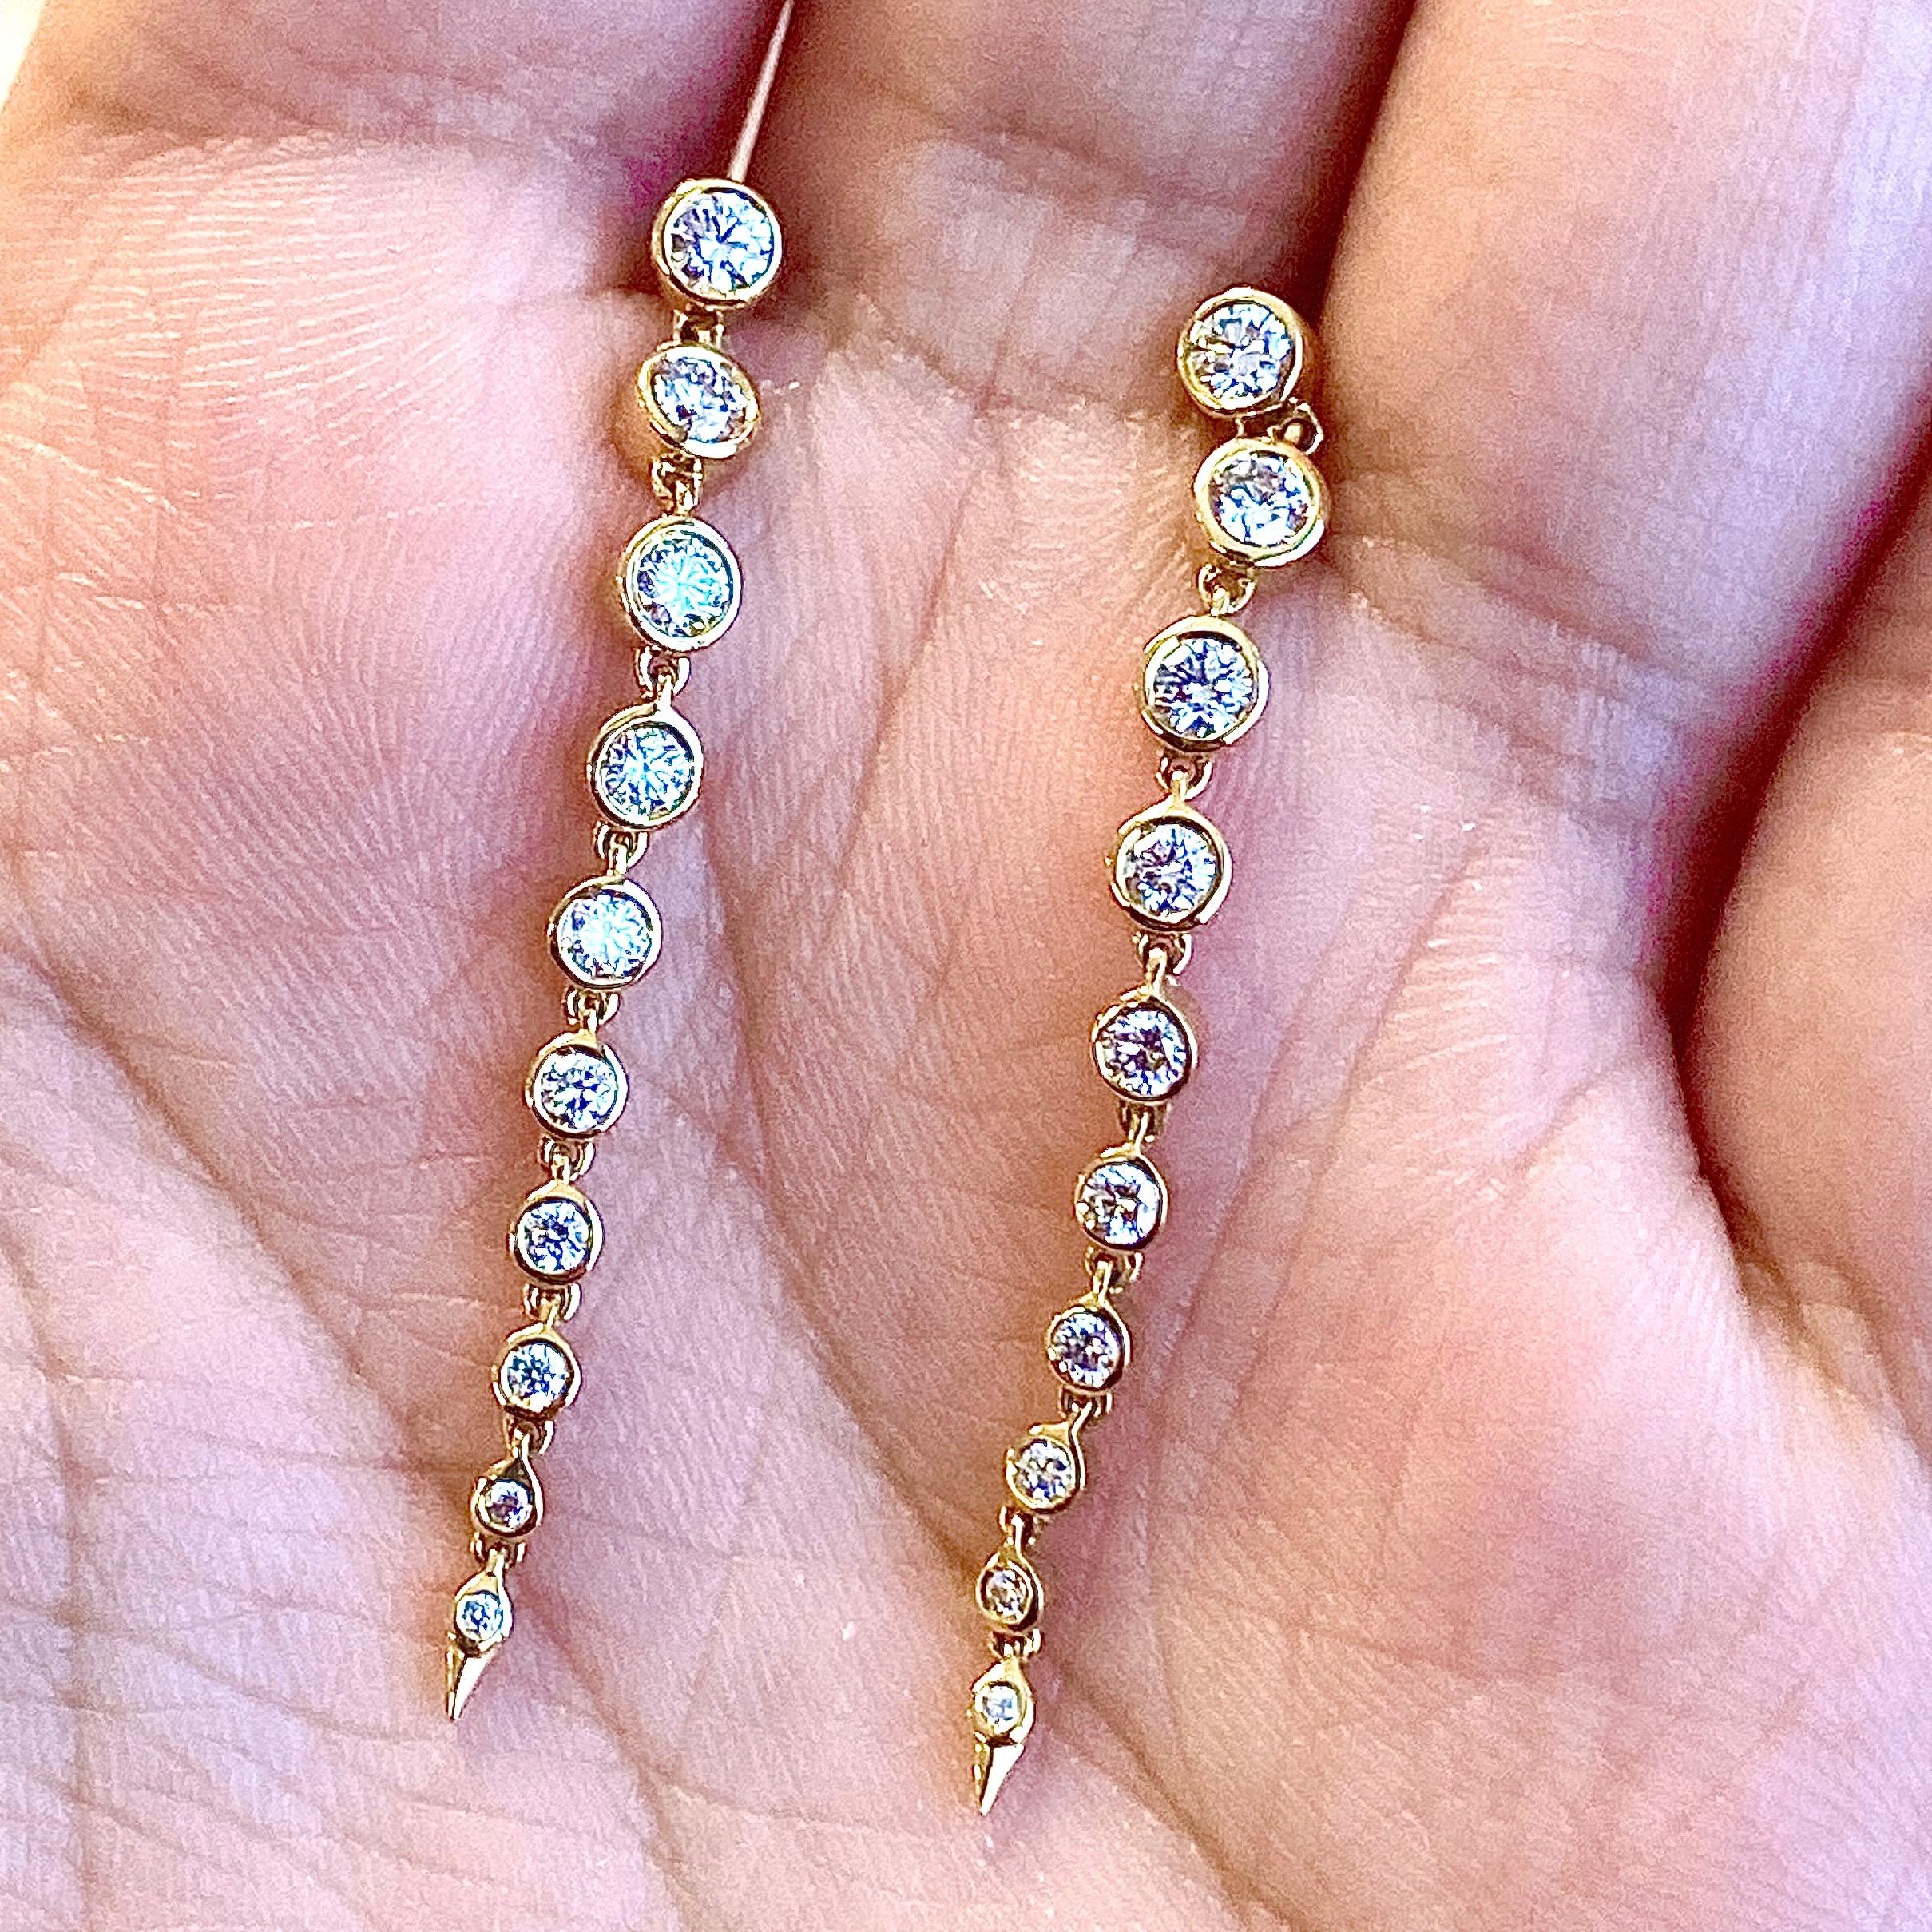 Créé en 18kyg 
Diamants 0,70 ct approxx

Ces boucles d'oreilles exquises en topaze bleue et quartz lunaire sont un délice céleste. Elles sont fabriquées avec soin et attention dans un luxueux or 18 carats. Dotées de 0,70 ct de diamants étincelants,